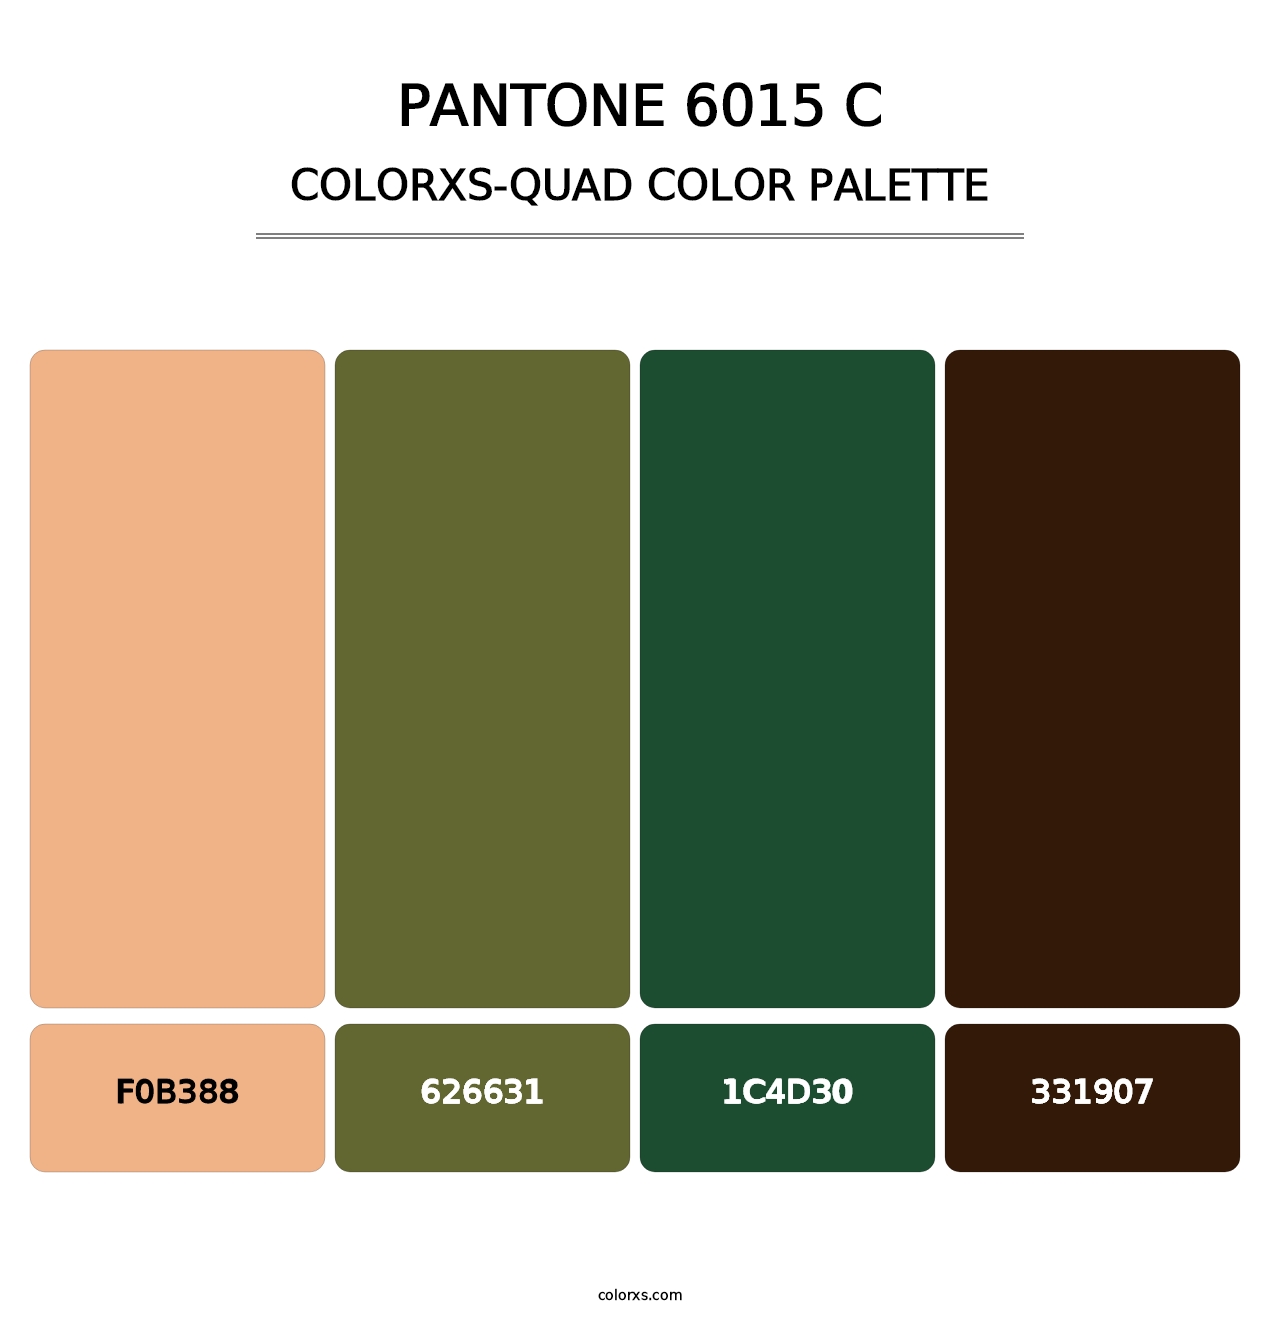 PANTONE 6015 C - Colorxs Quad Palette